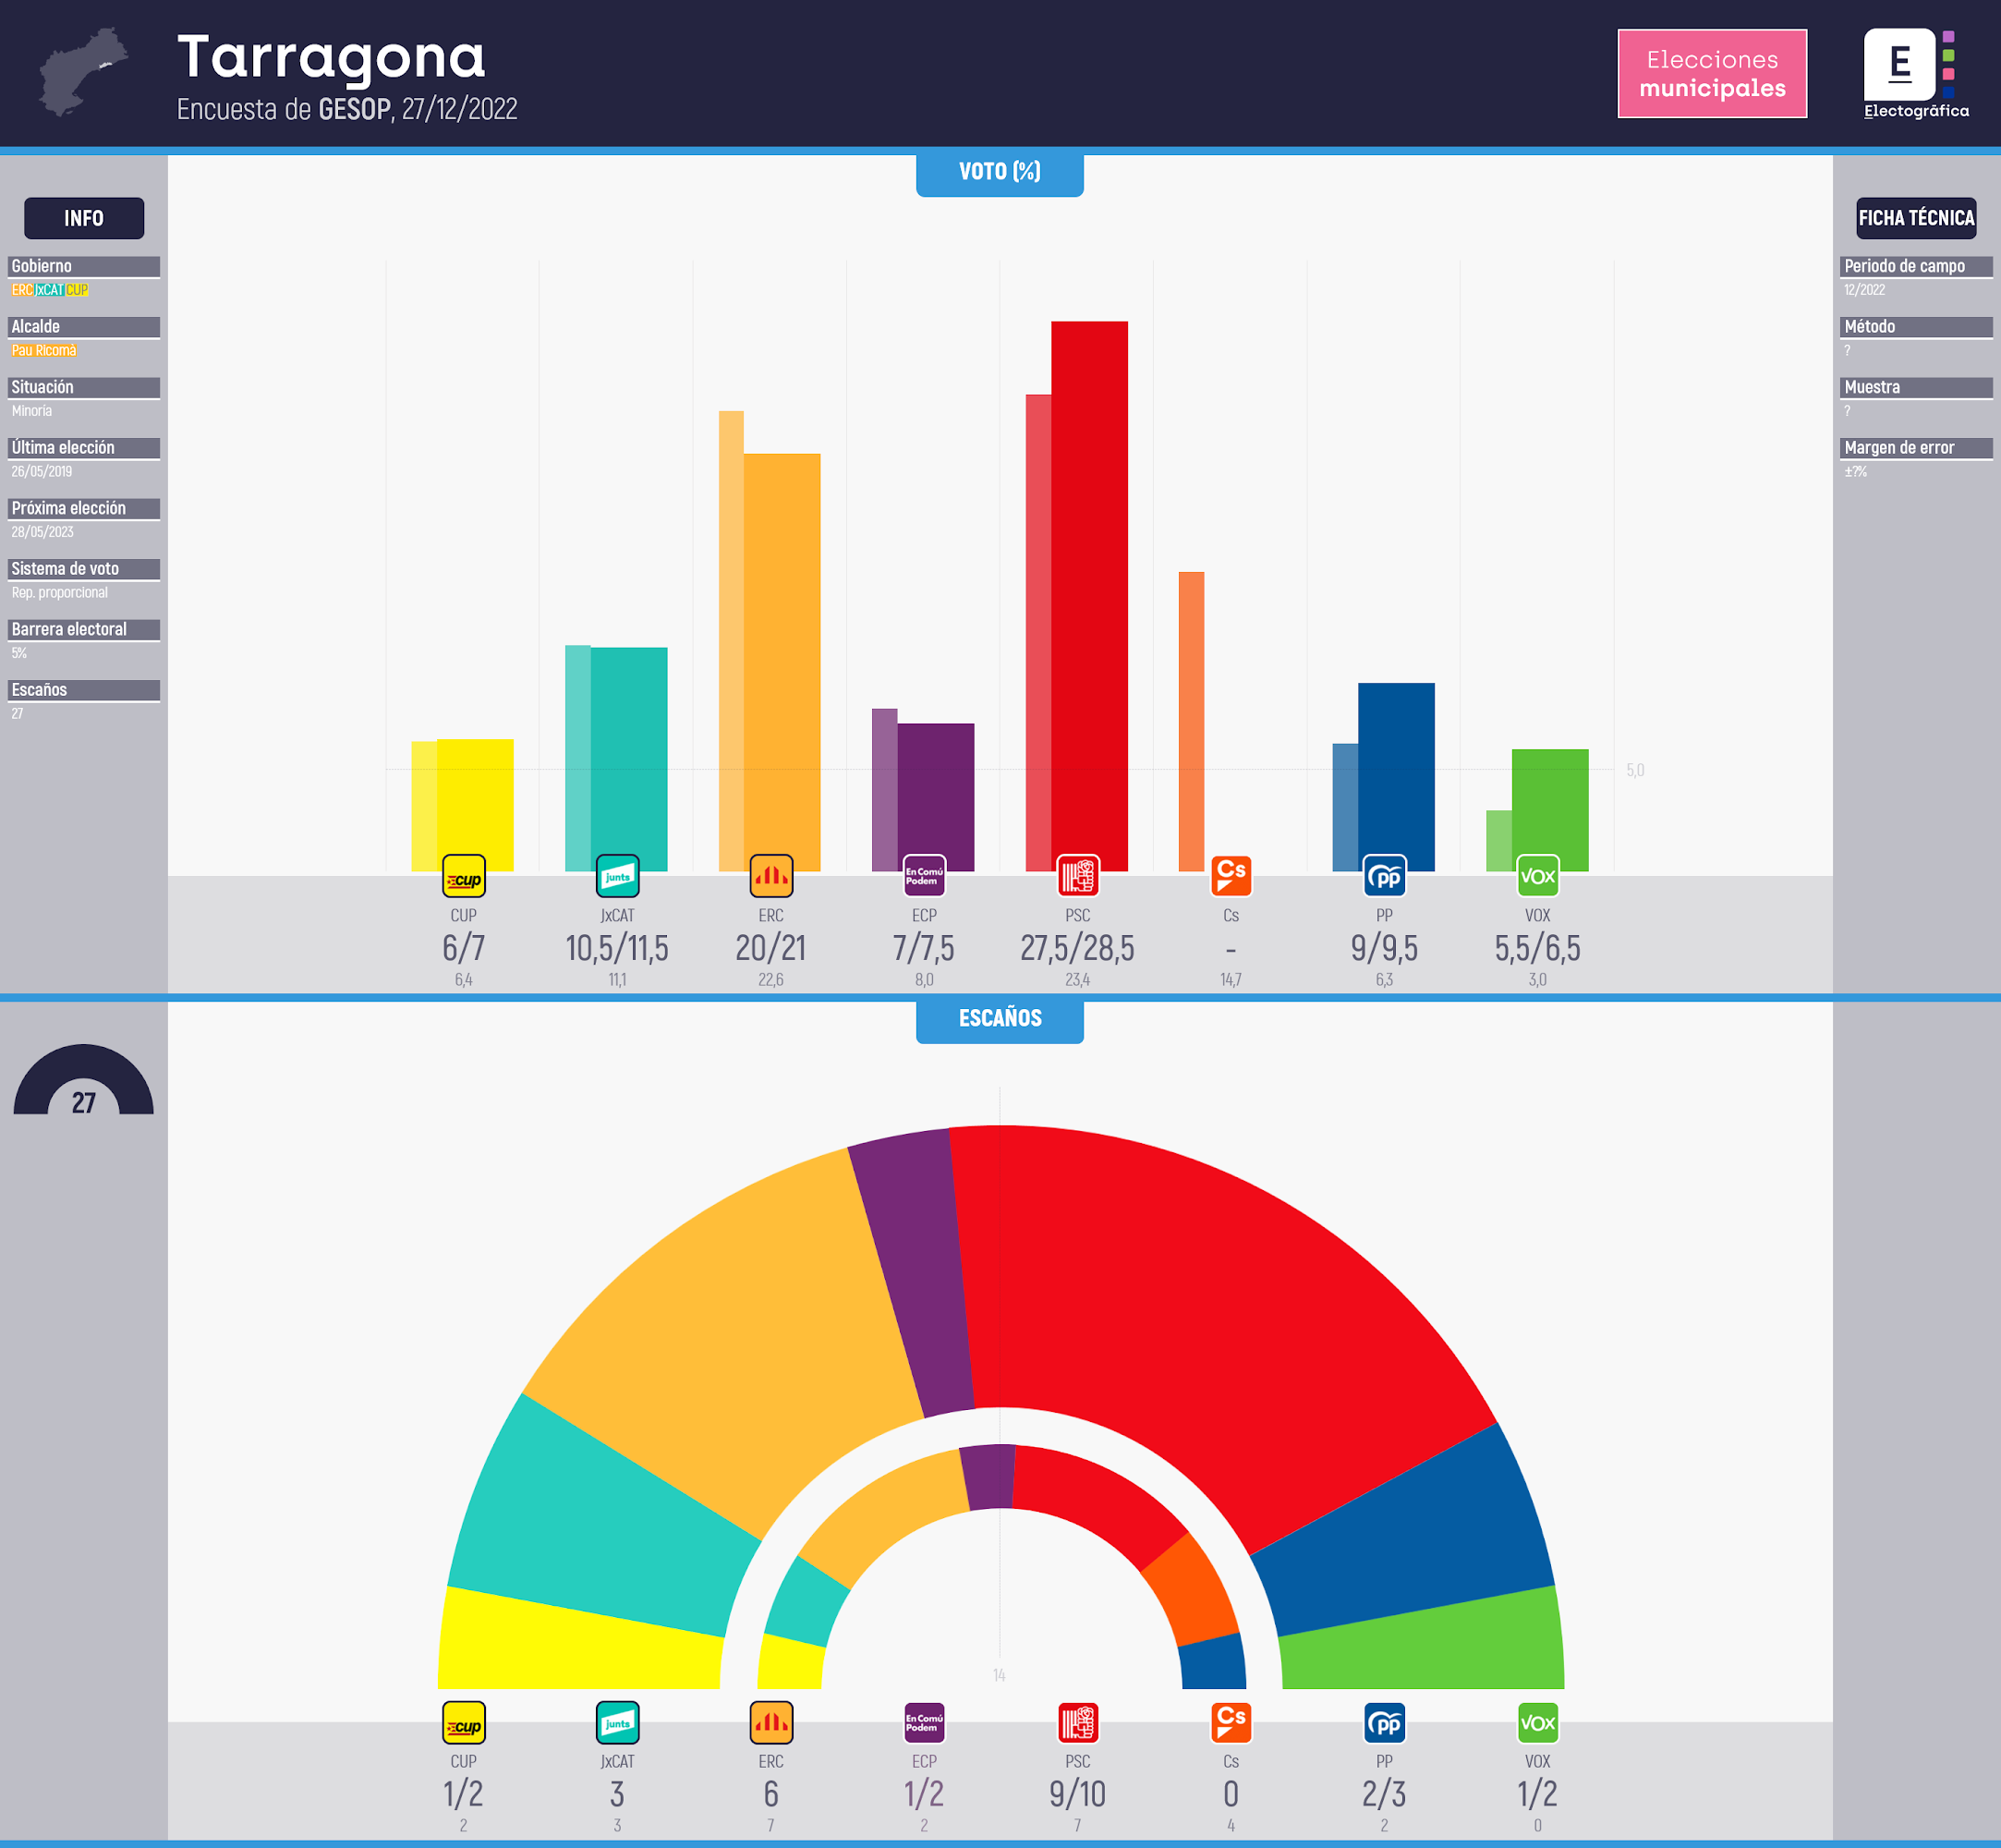 Gráfico de la encuesta para elecciones municipales en Tarragona realizada por GESOP, 27/12/2022